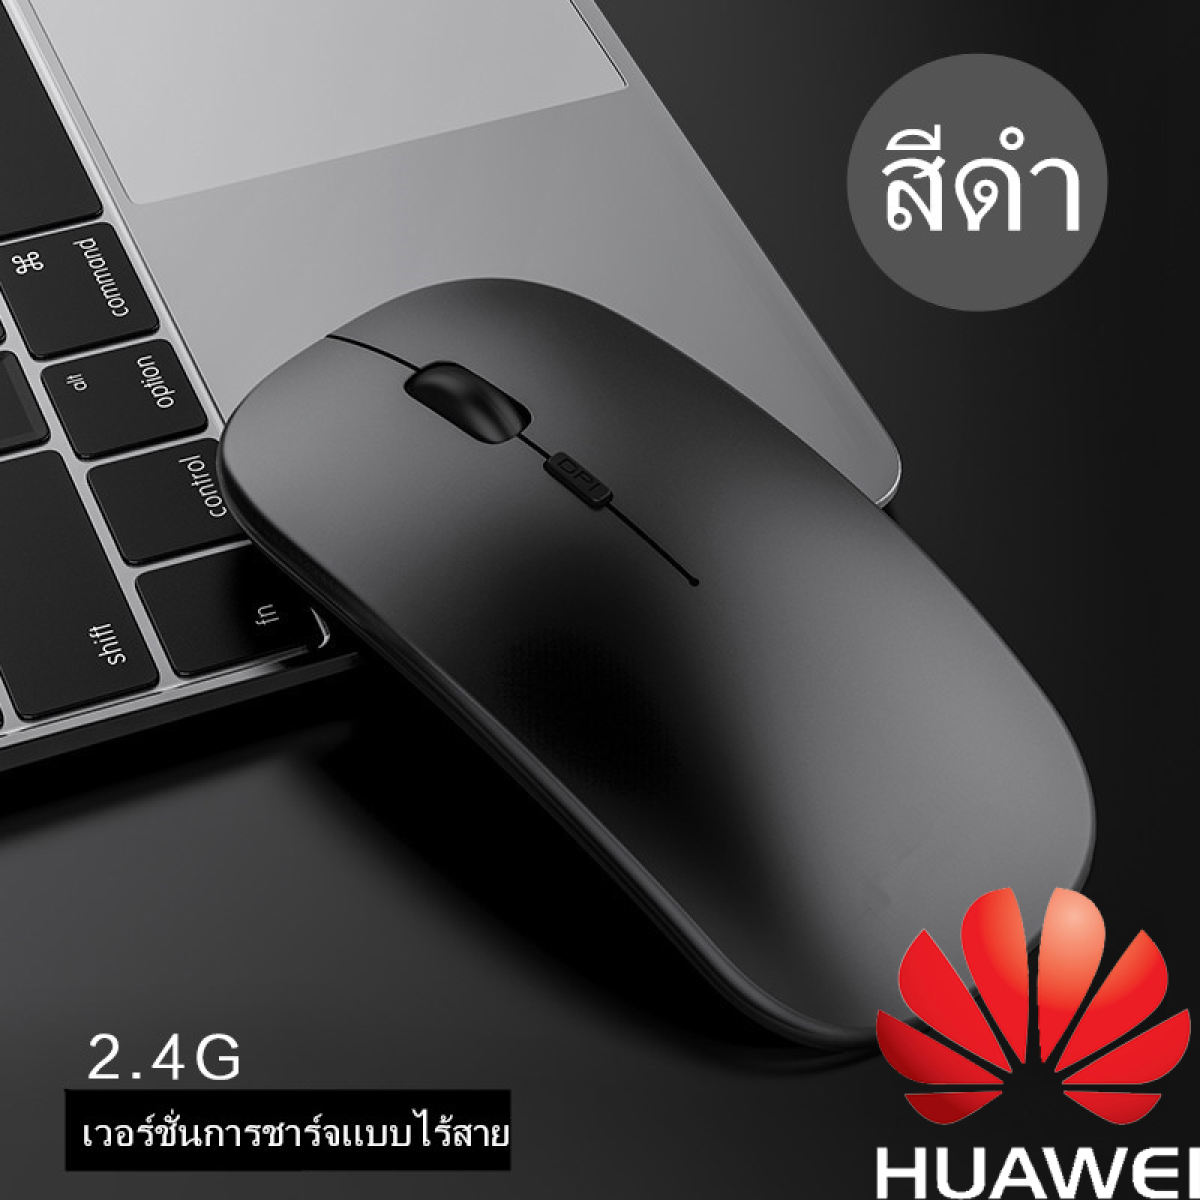 Huawei เมาส์ไร้เสียงไร้สาย เมาส์เชื่อมบลูทูธ ชาร์จแบตได้ เมาส์บลูทูธ เม้าส์ชาร์จไฟได้ ไม่ต้องใส่ถ่าน เมาส์ไร้สายไร้เสียงErgonomic Optical Usb Computer Mouse Without Battery For Apple Mac PC